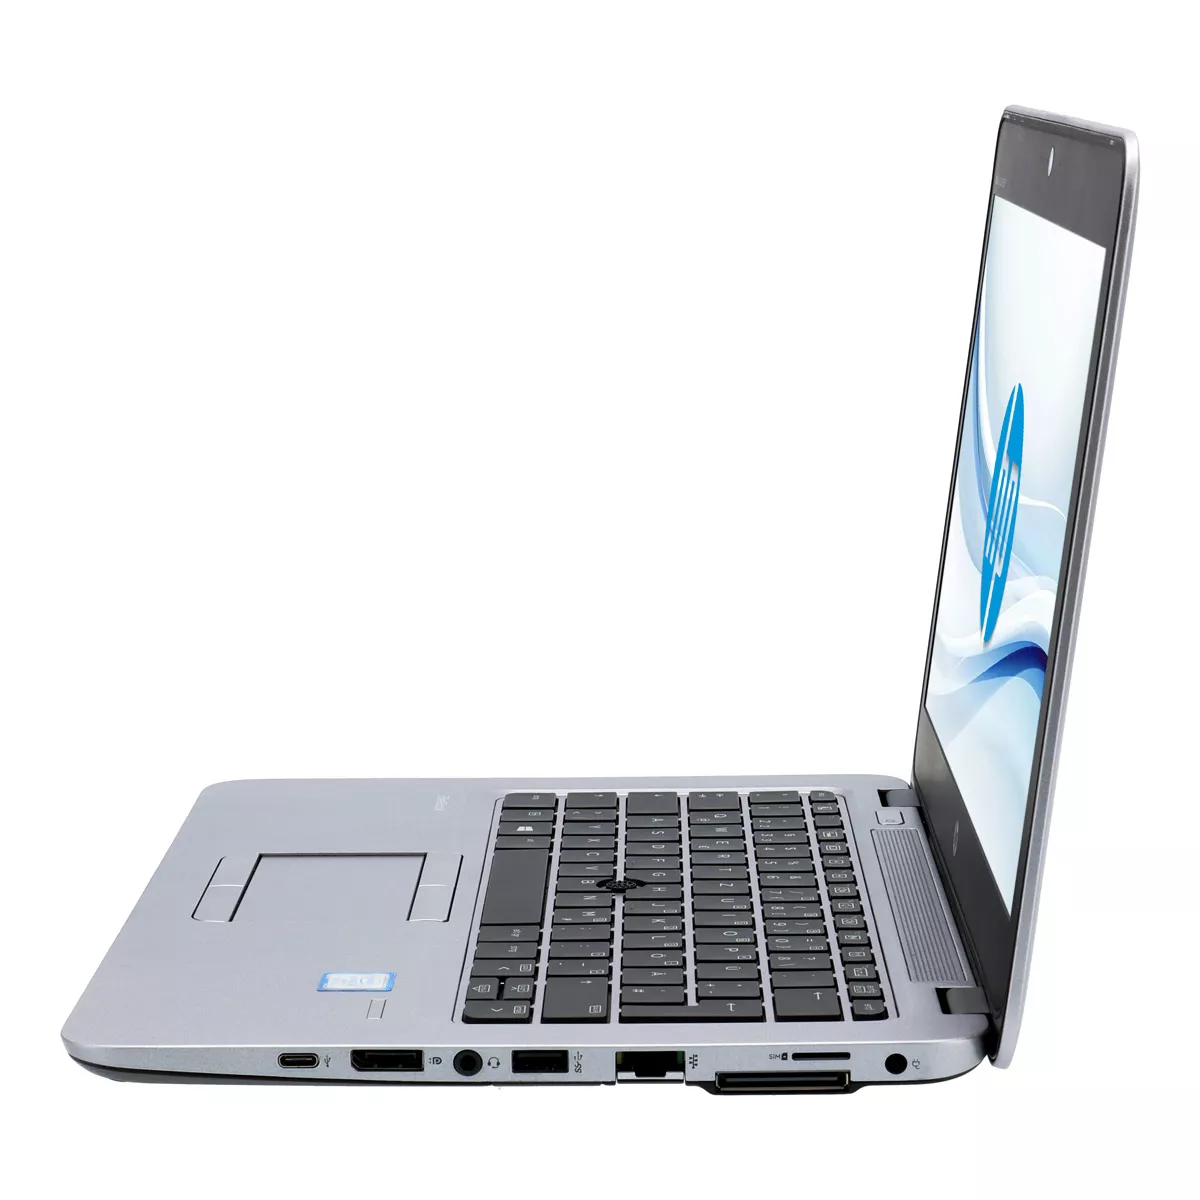 HP EliteBook 820 G3 Core i5 6200U 8 GB 240 GB m.2 SSD Webcam A+